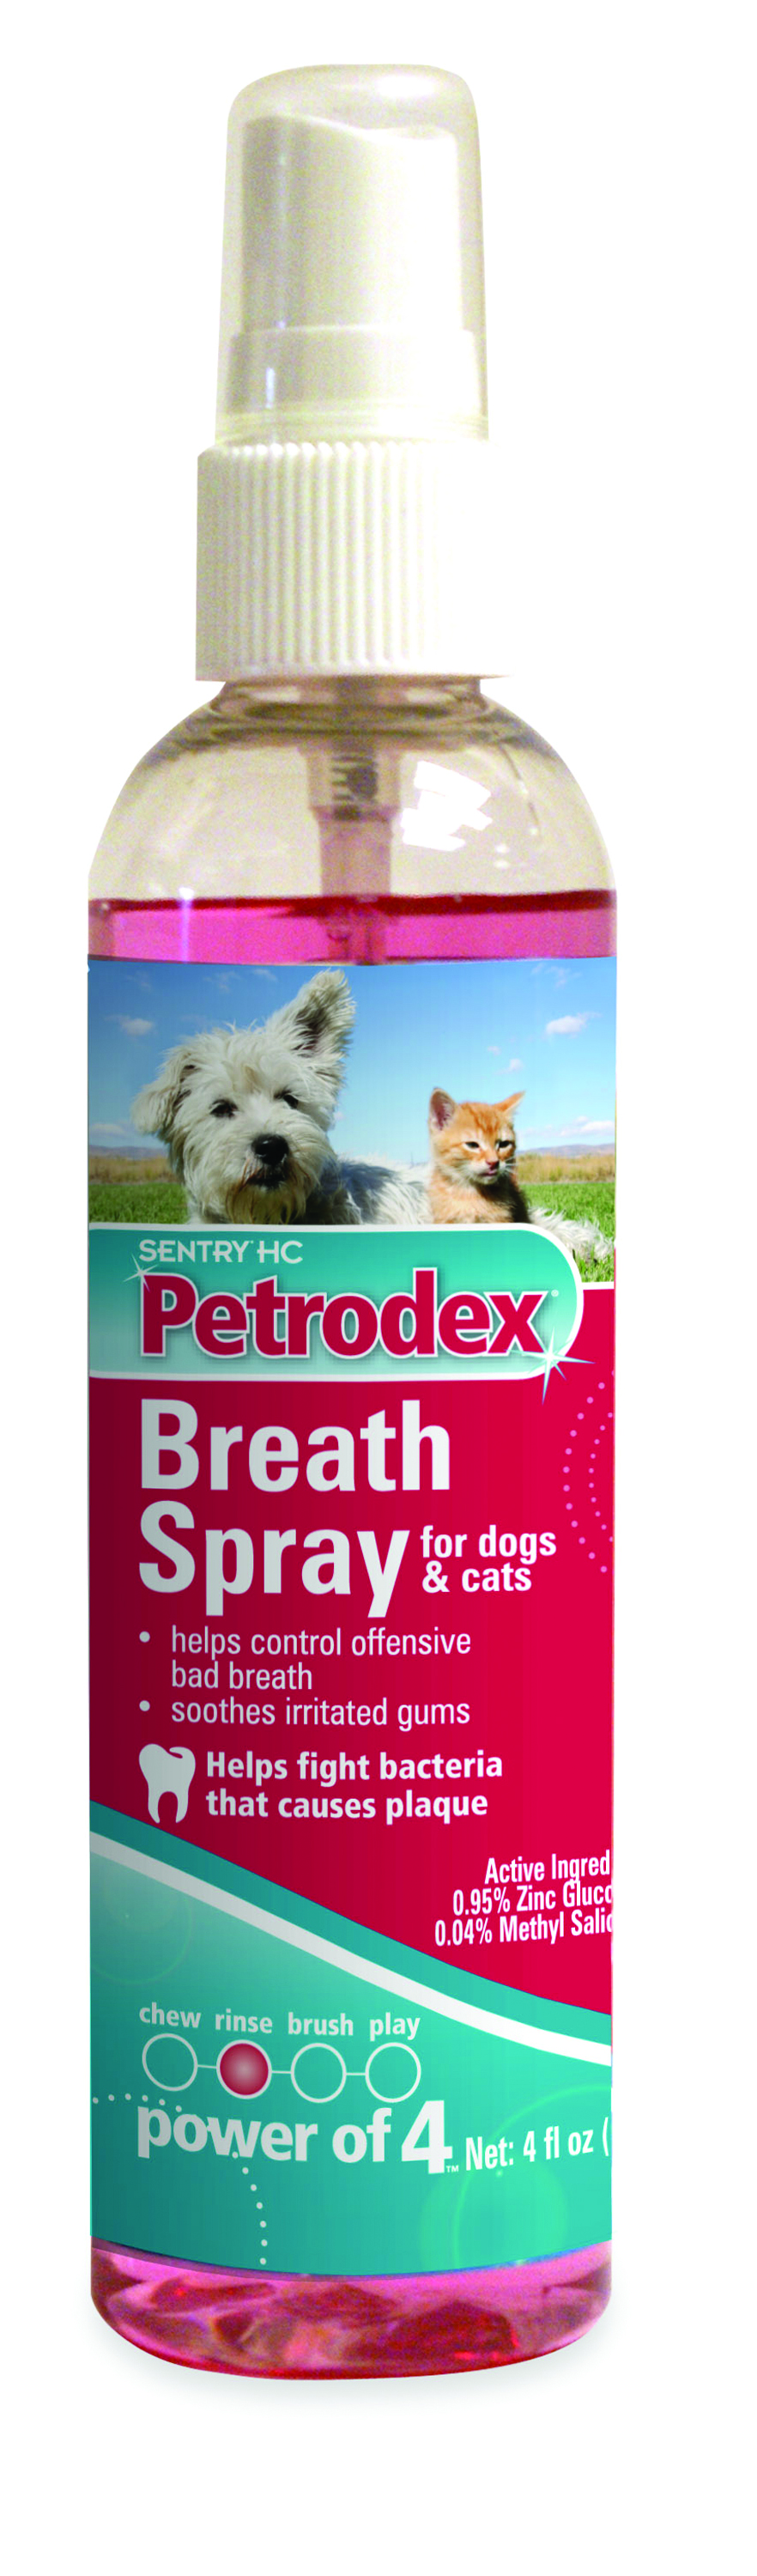 4 Oz Breath spray for Dog/Cat